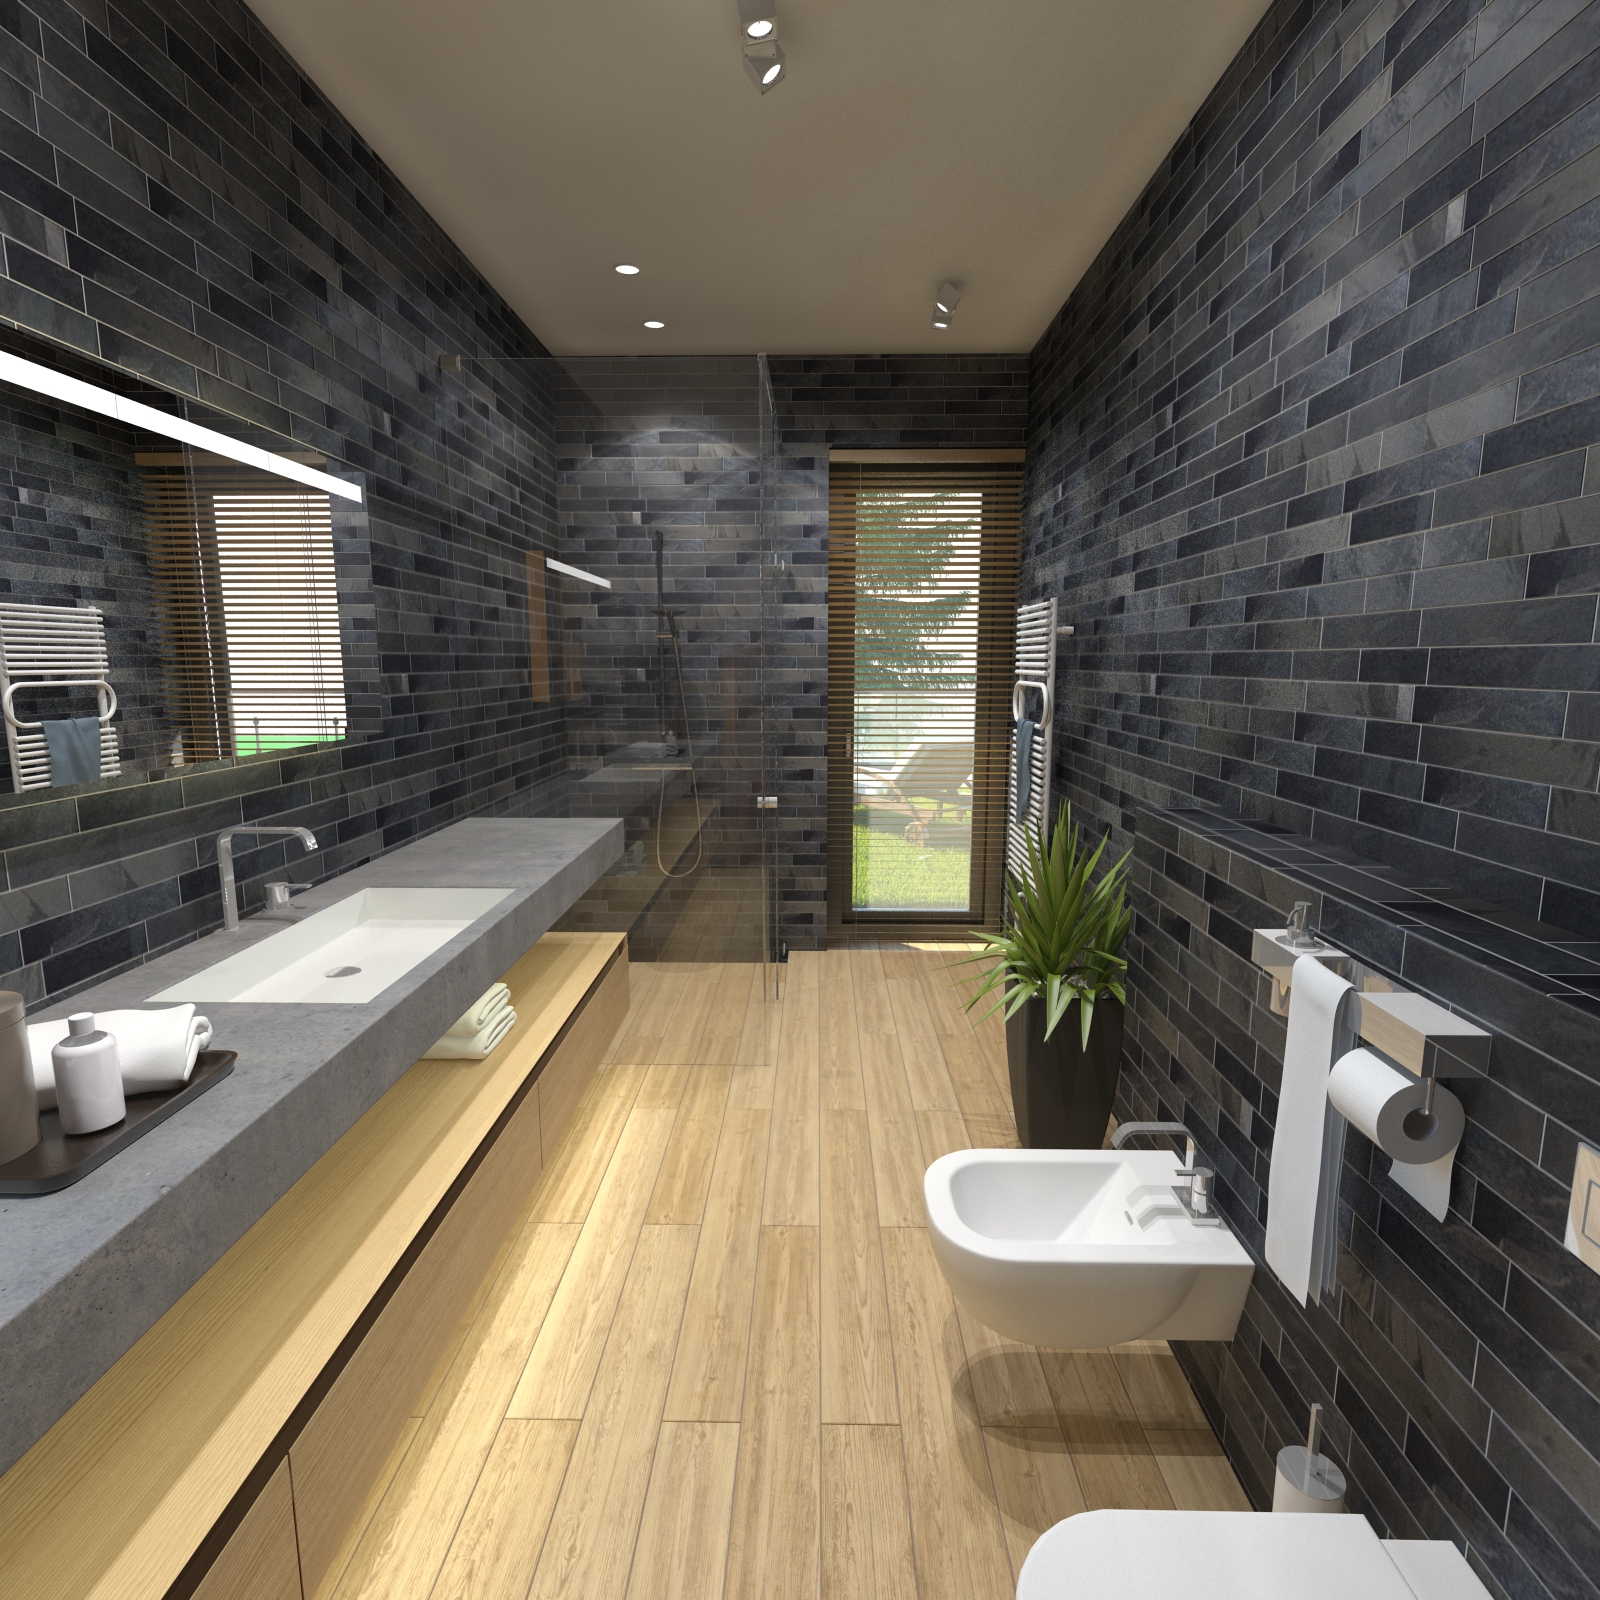 Fürdőszoba - látványterv / Bathroom - architectural visualization